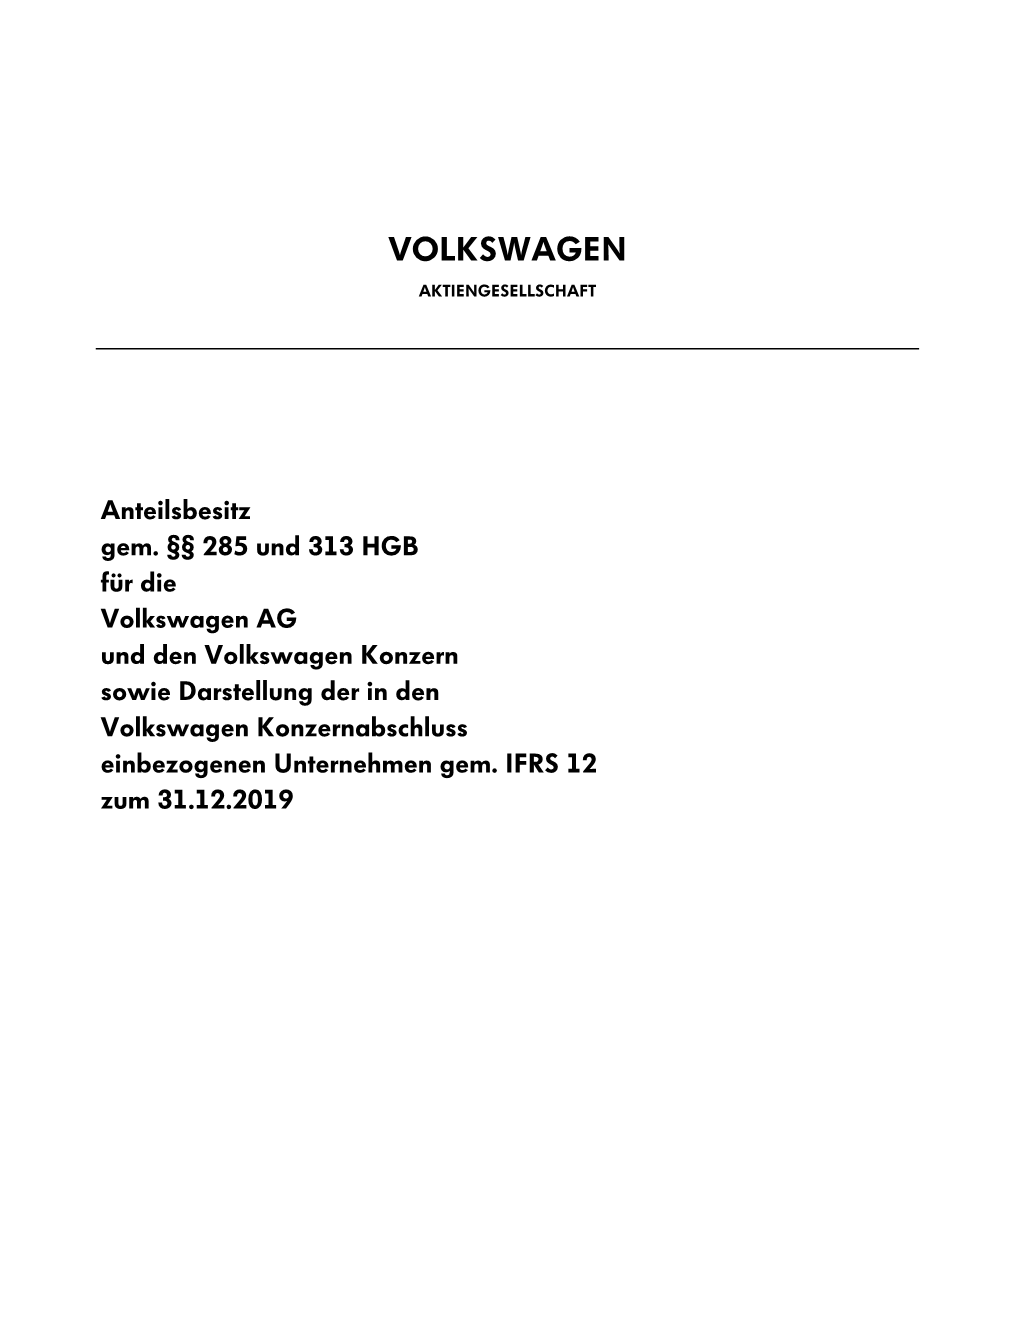 Volkswagen AG Und Den Volkswagen Konzern Sowie Darstellung Der in Den Volkswagen Konzernabschluss Einbezogenen Unternehmen Gem